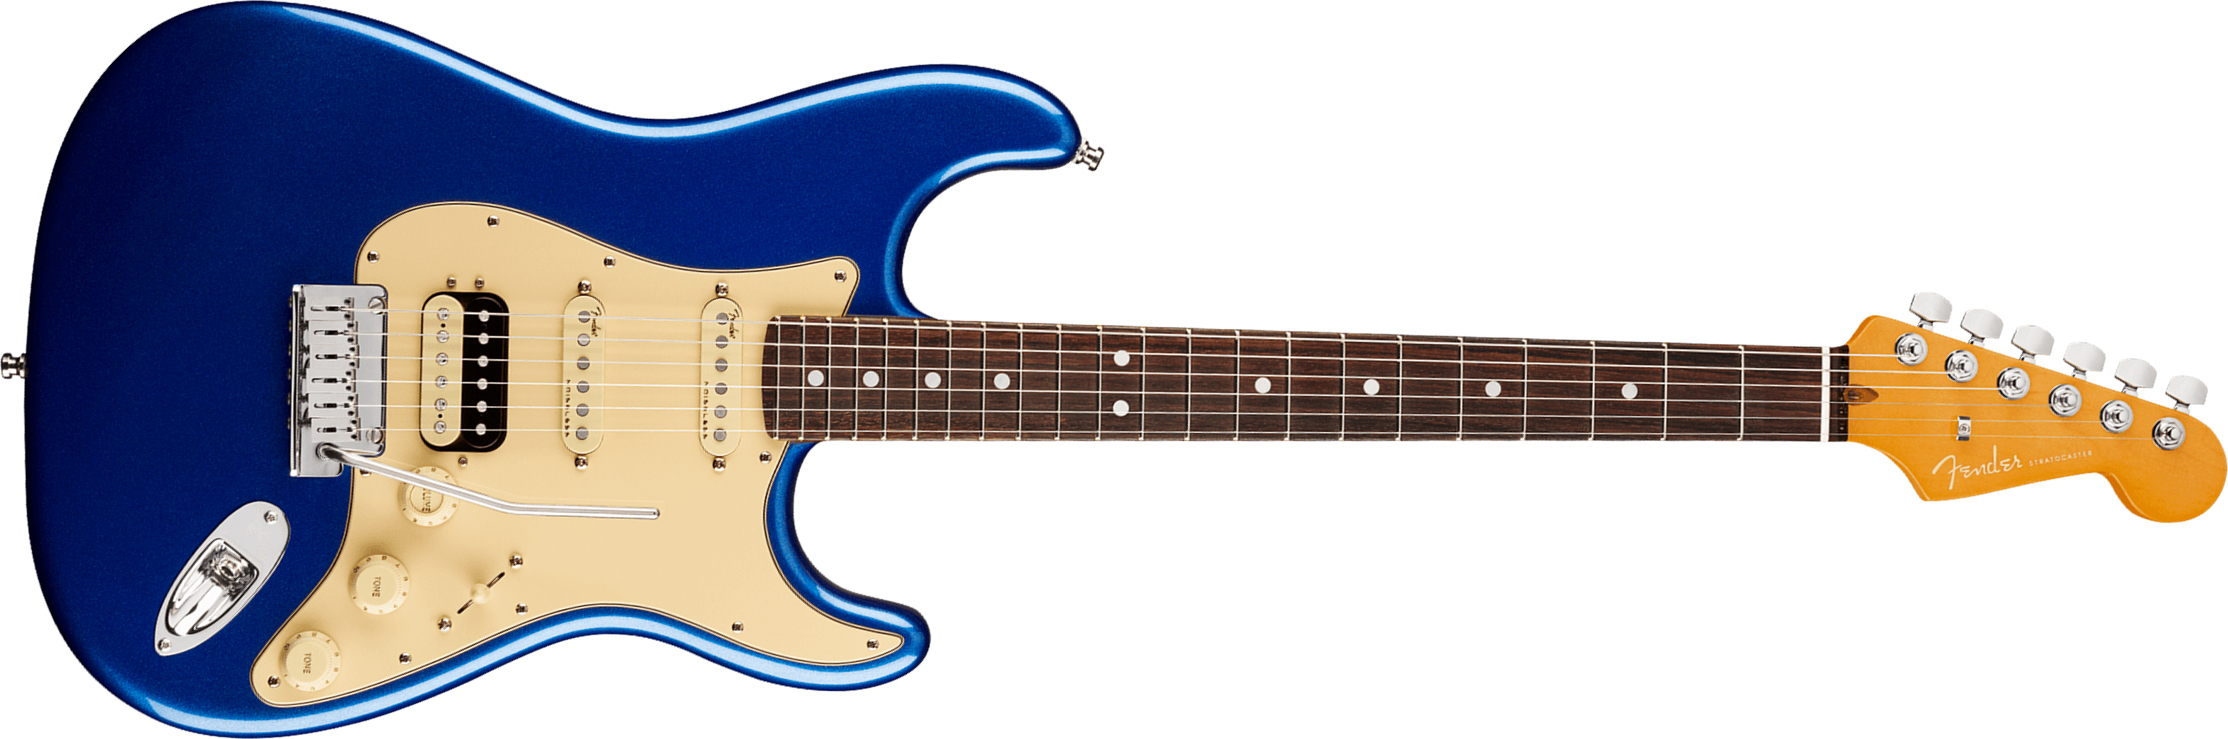 Fender Strat American Ultra Hss 2019 Usa Rw - Cobra Blue - Elektrische gitaar in Str-vorm - Main picture